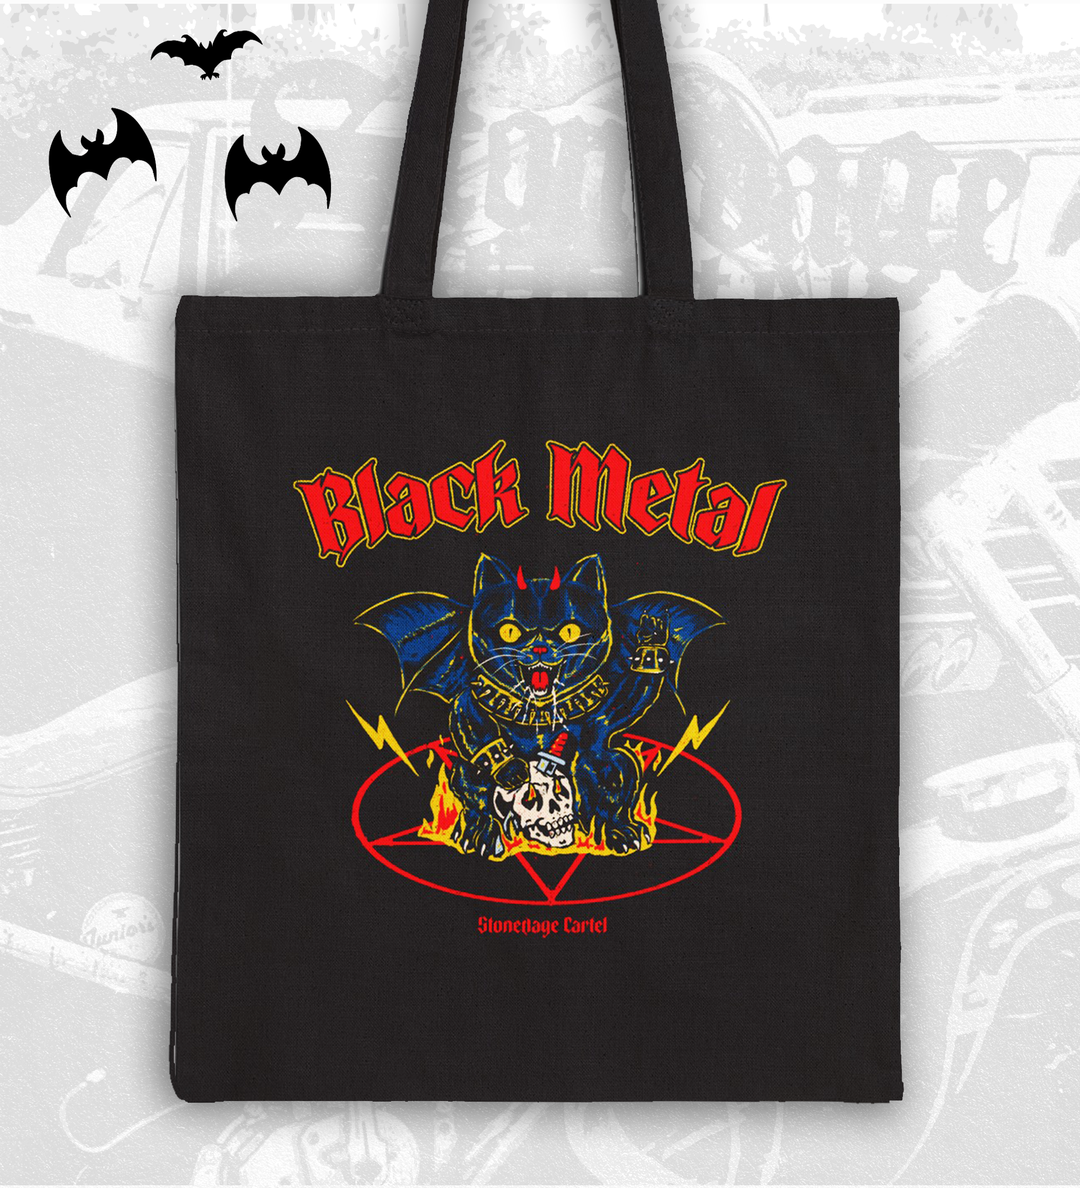 Black Metal Tote Bag